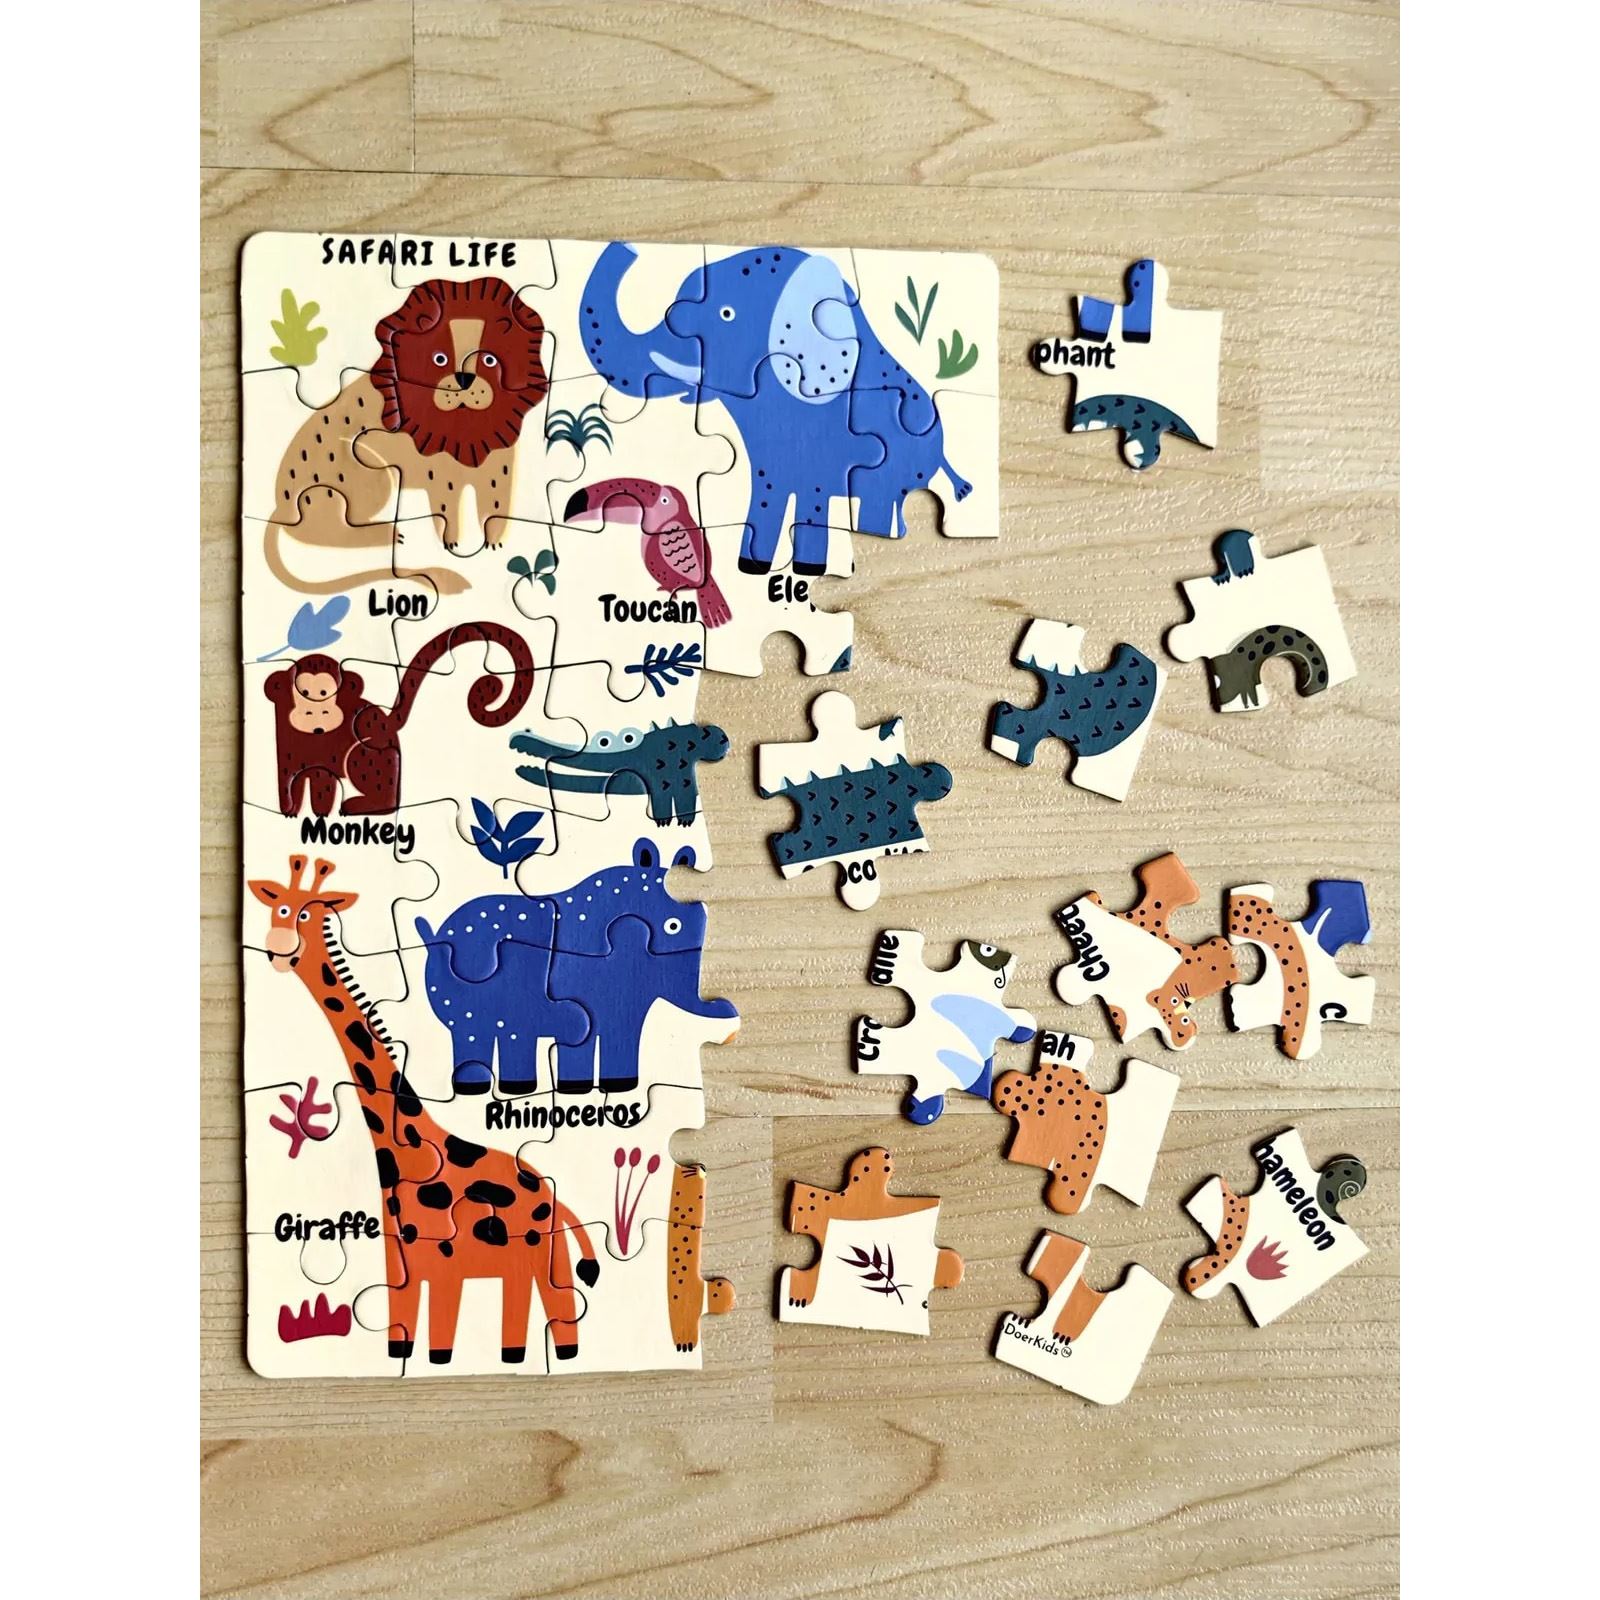 Doer Kids Safari Vahşi Hayvanlar Mini Puzzle 40 Parça